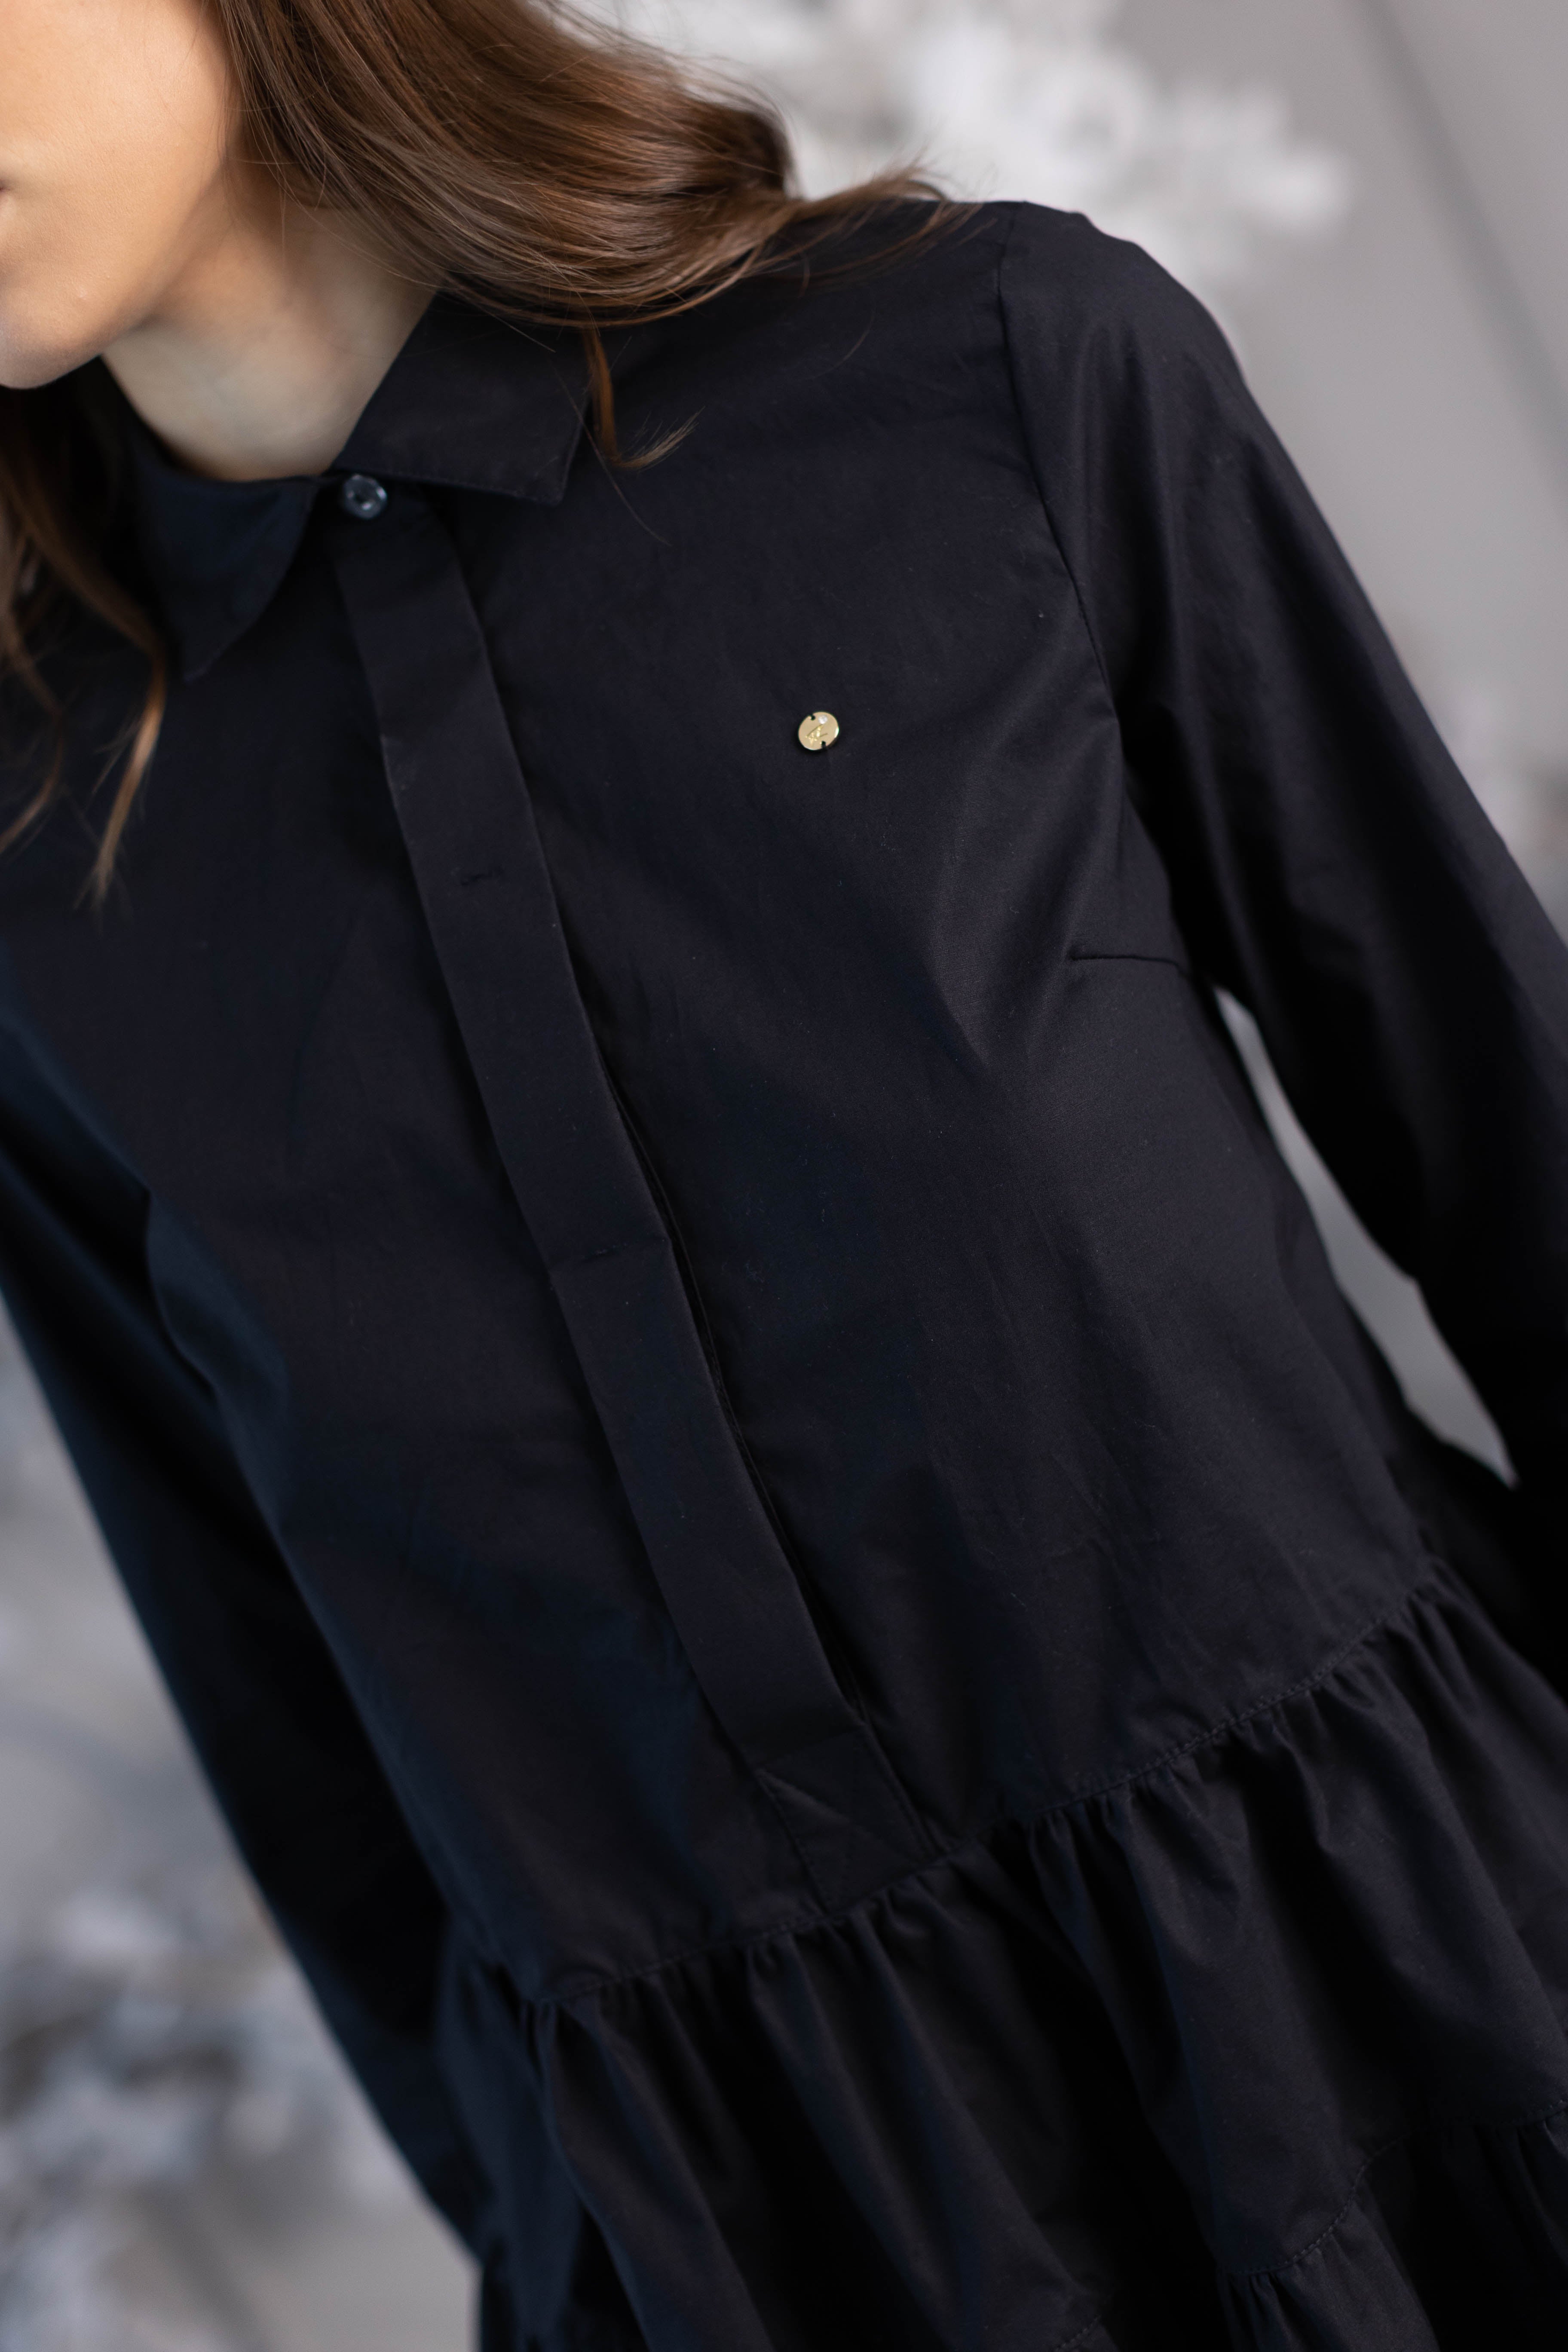 W. Black Shirt + Black Blouse Set 